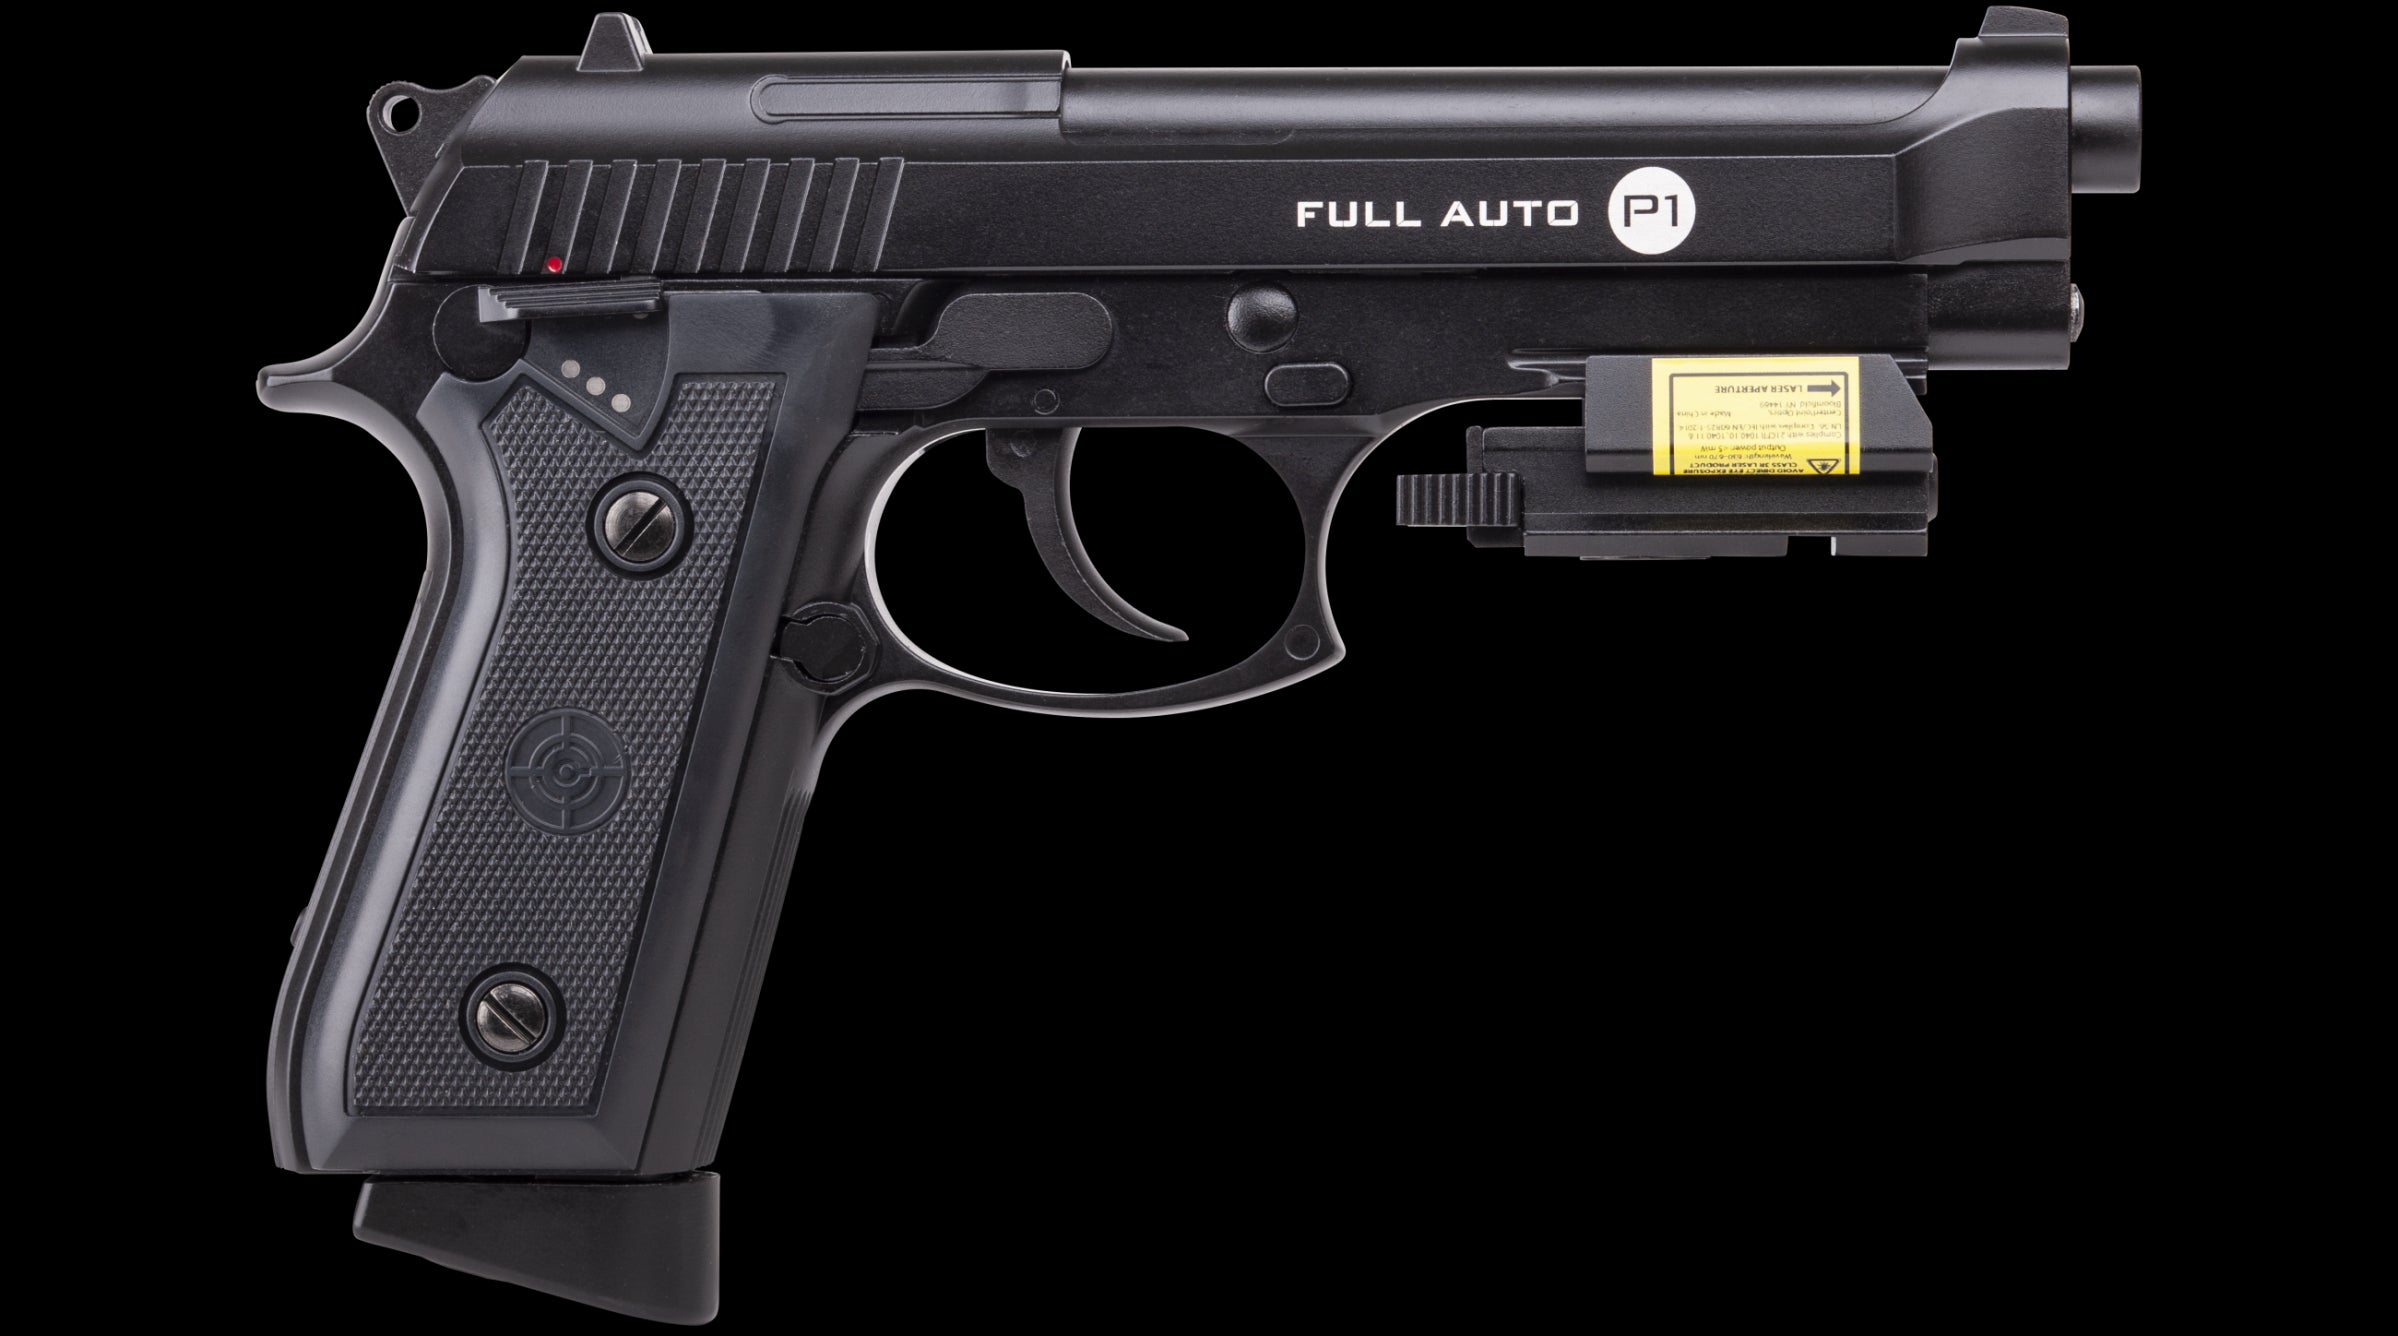 Pistola de aire Crosman P1 Automática Blowback Mira Laser 400fps